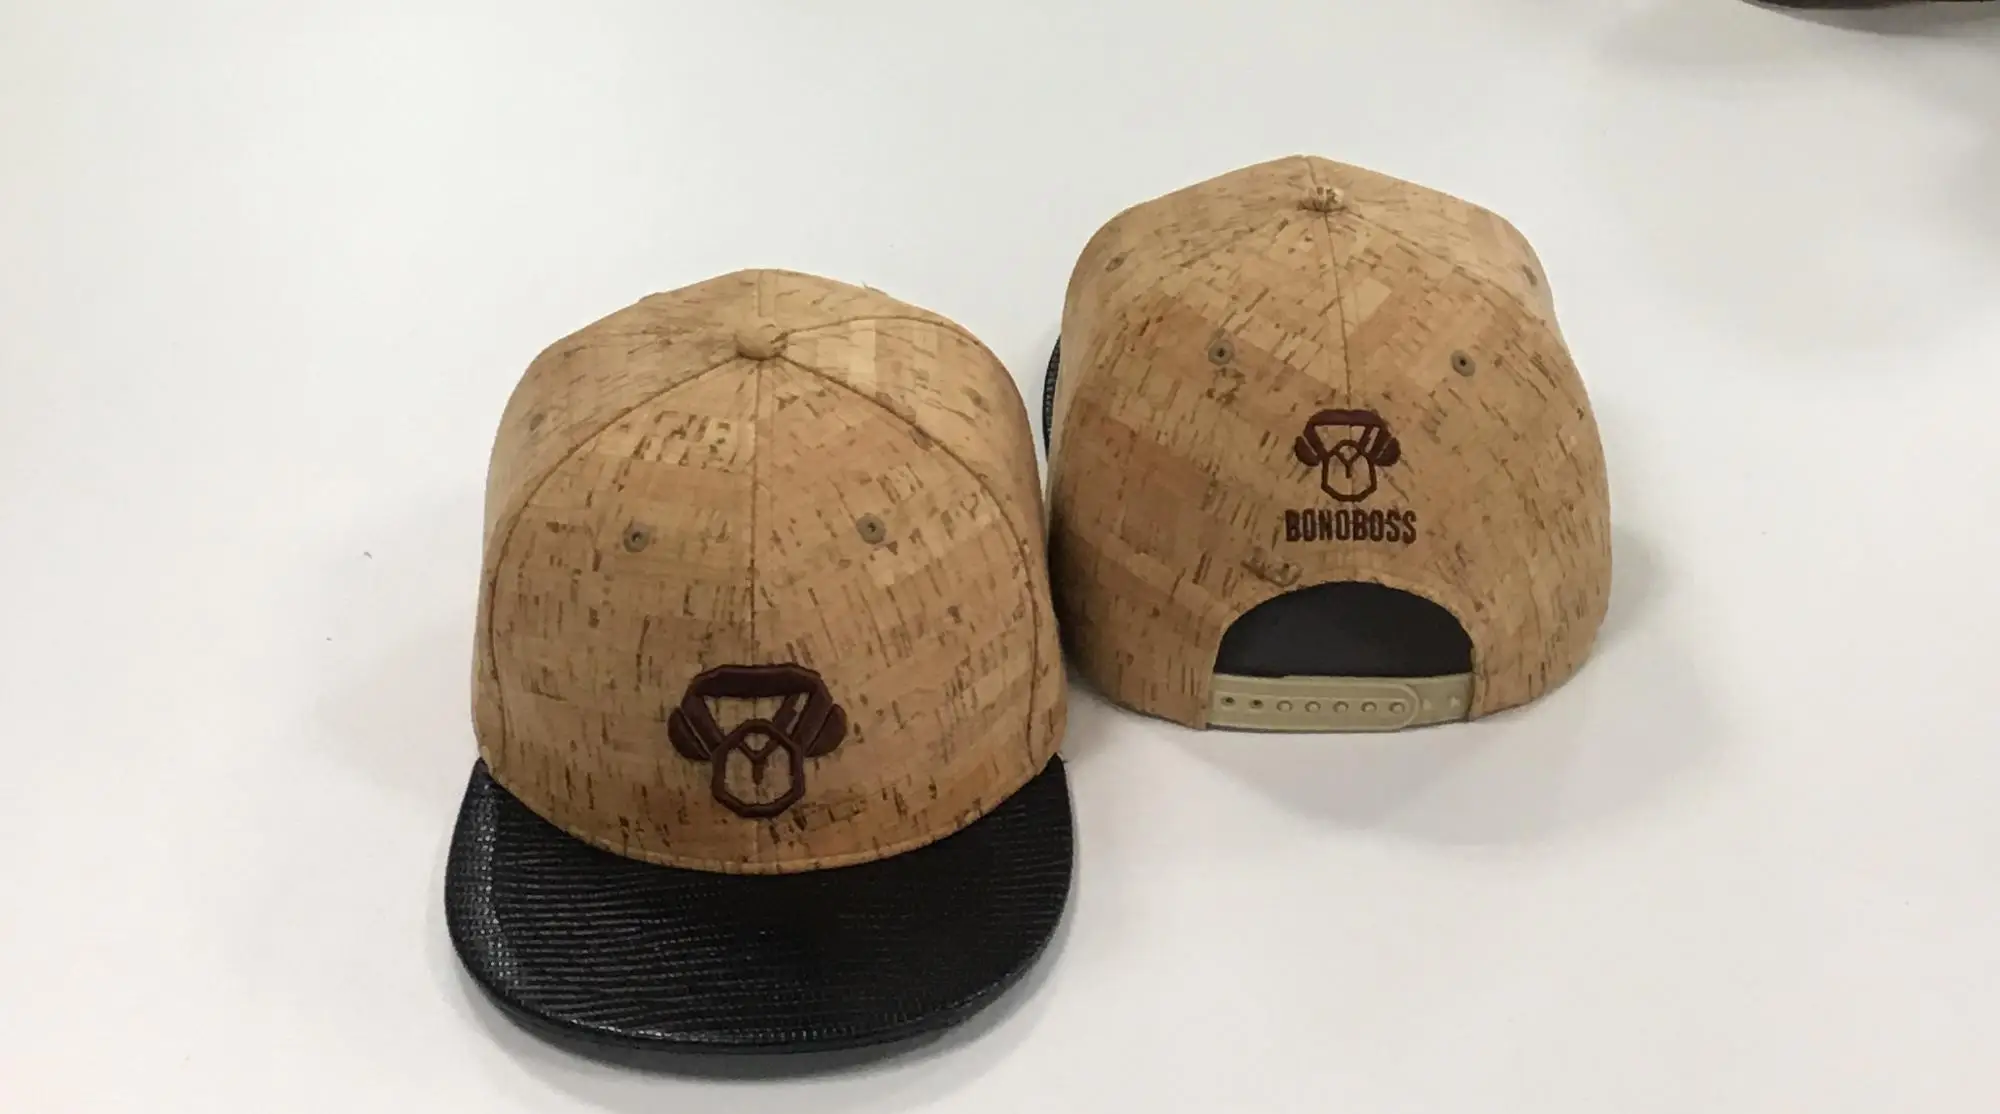 カスタム木製コルク帽子フラットつば帽子 Buy 木製コルク帽子 木製コルクフラットつば帽子 カスタム木製コルク帽子 Product On Alibaba Com